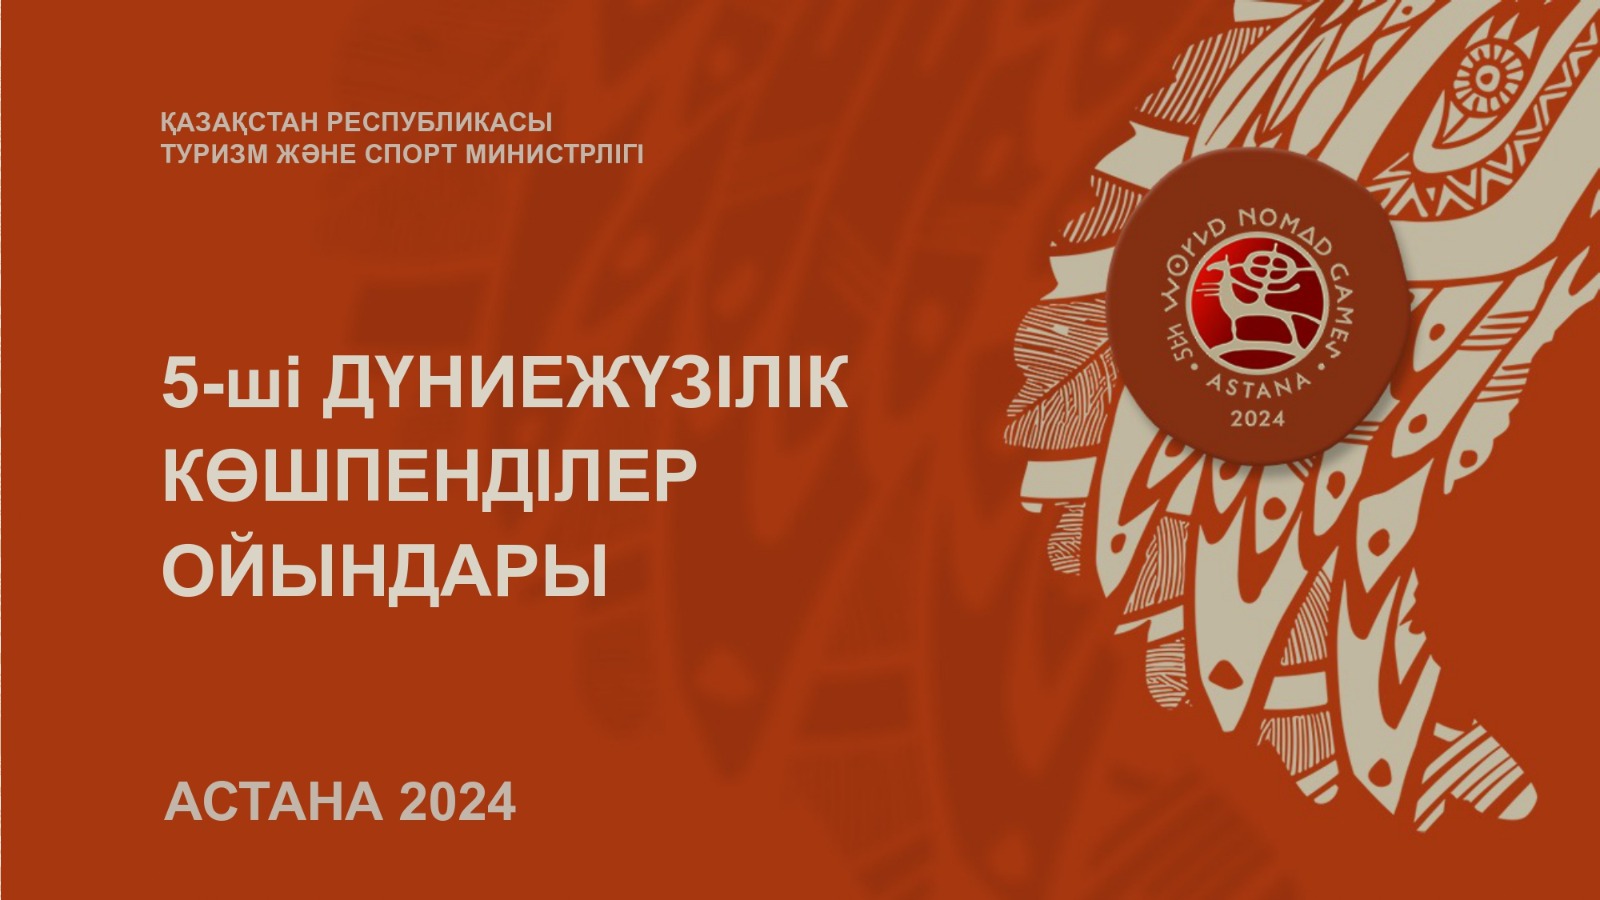 Представлен тизер 5-х Всемирных игр кочевников Астана 2024